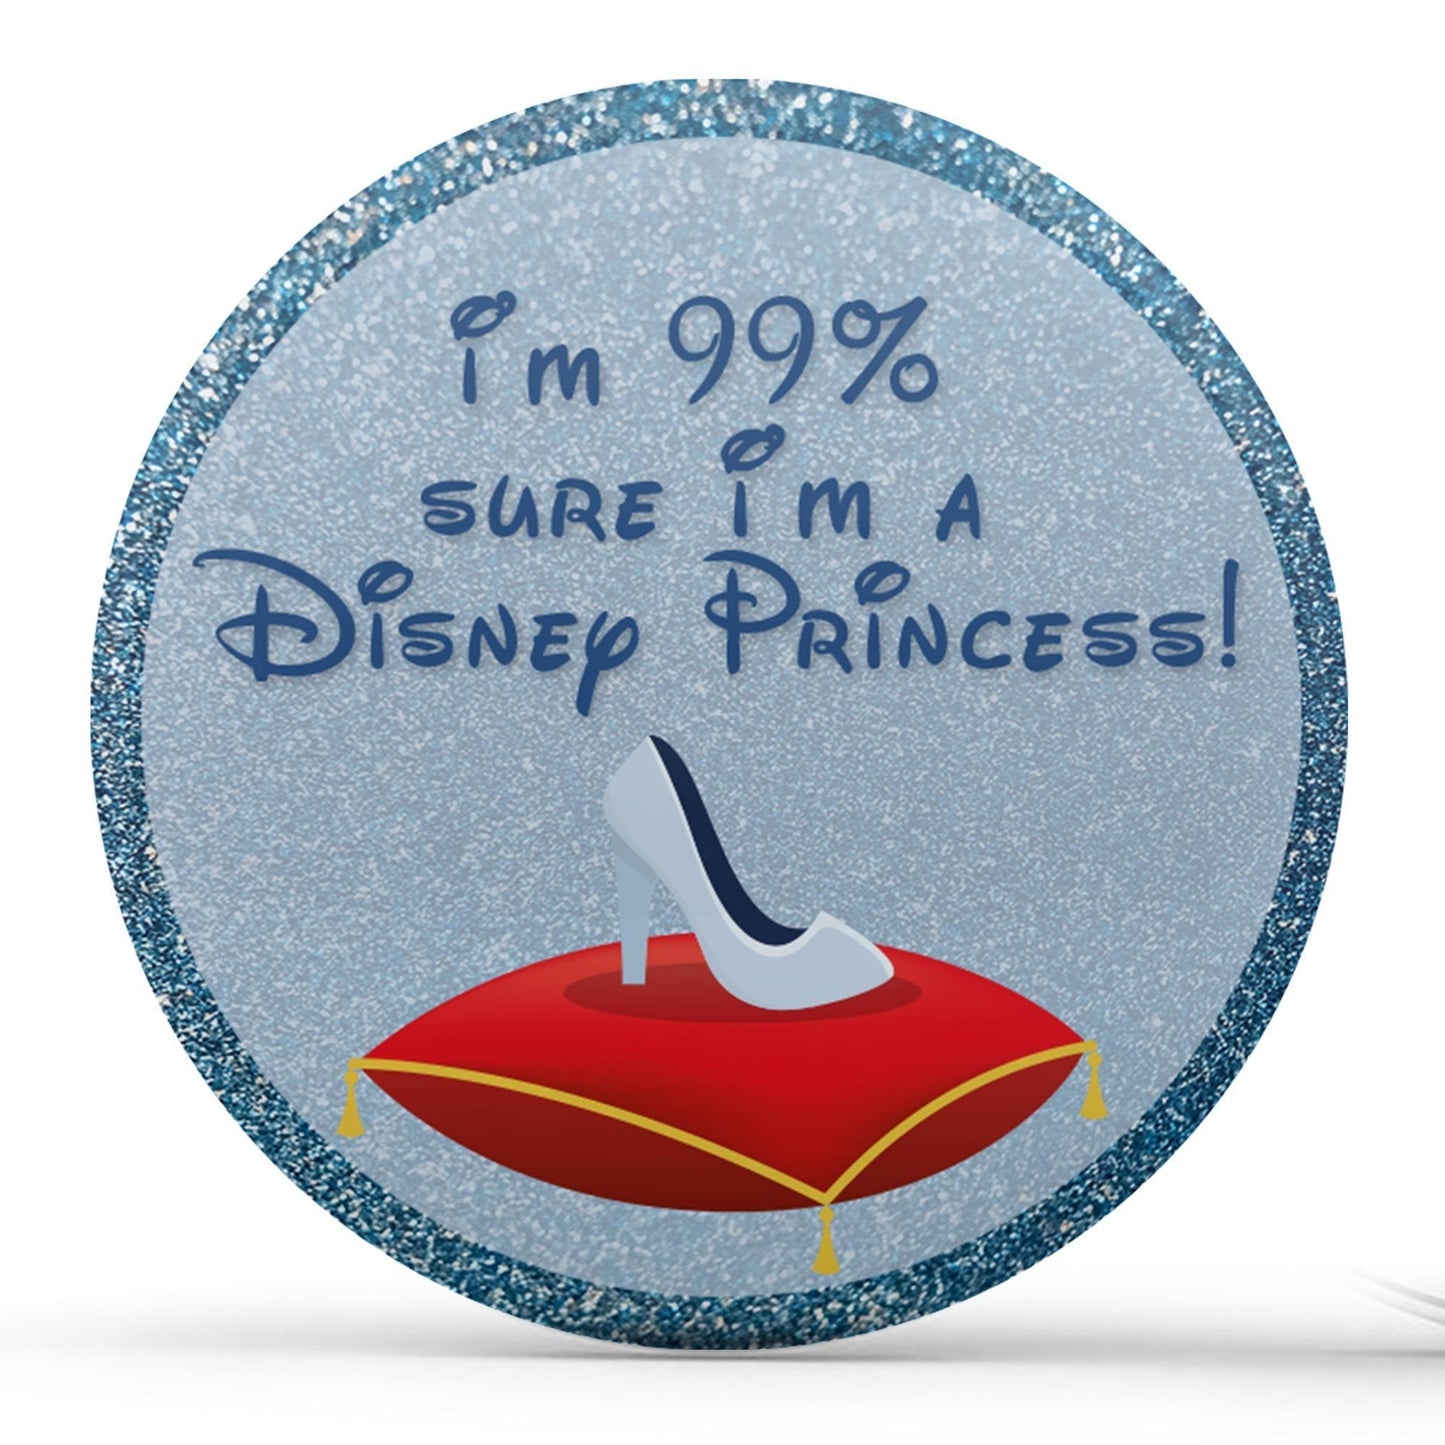 I'm 99% Sure I'm A Disney Princess - Blue Image